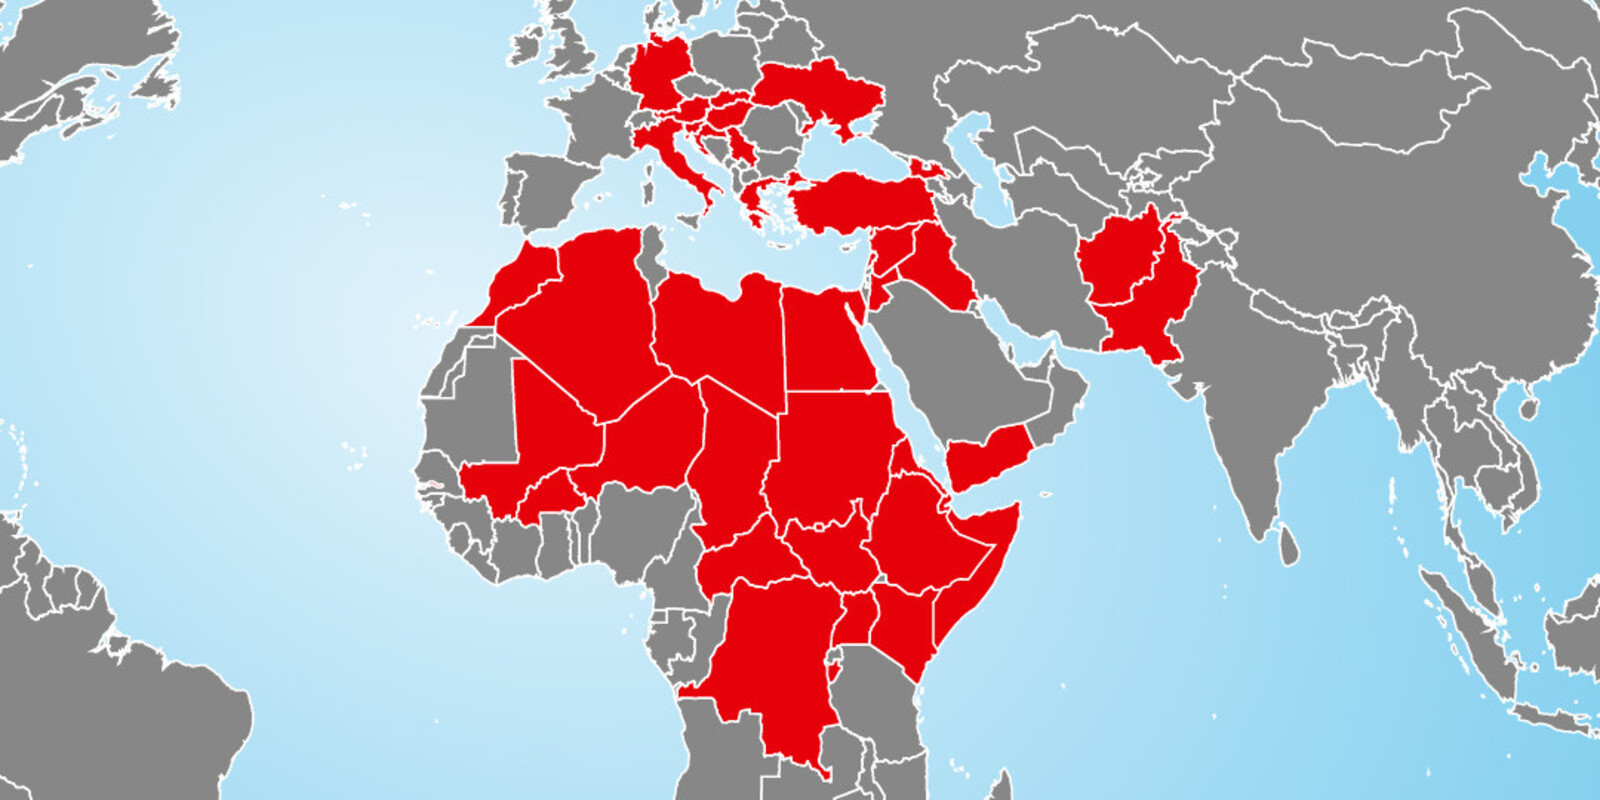 Auf der Einsatzkarte werden von der Flüchtlingskrise betroffene Länder rot dargestellt.